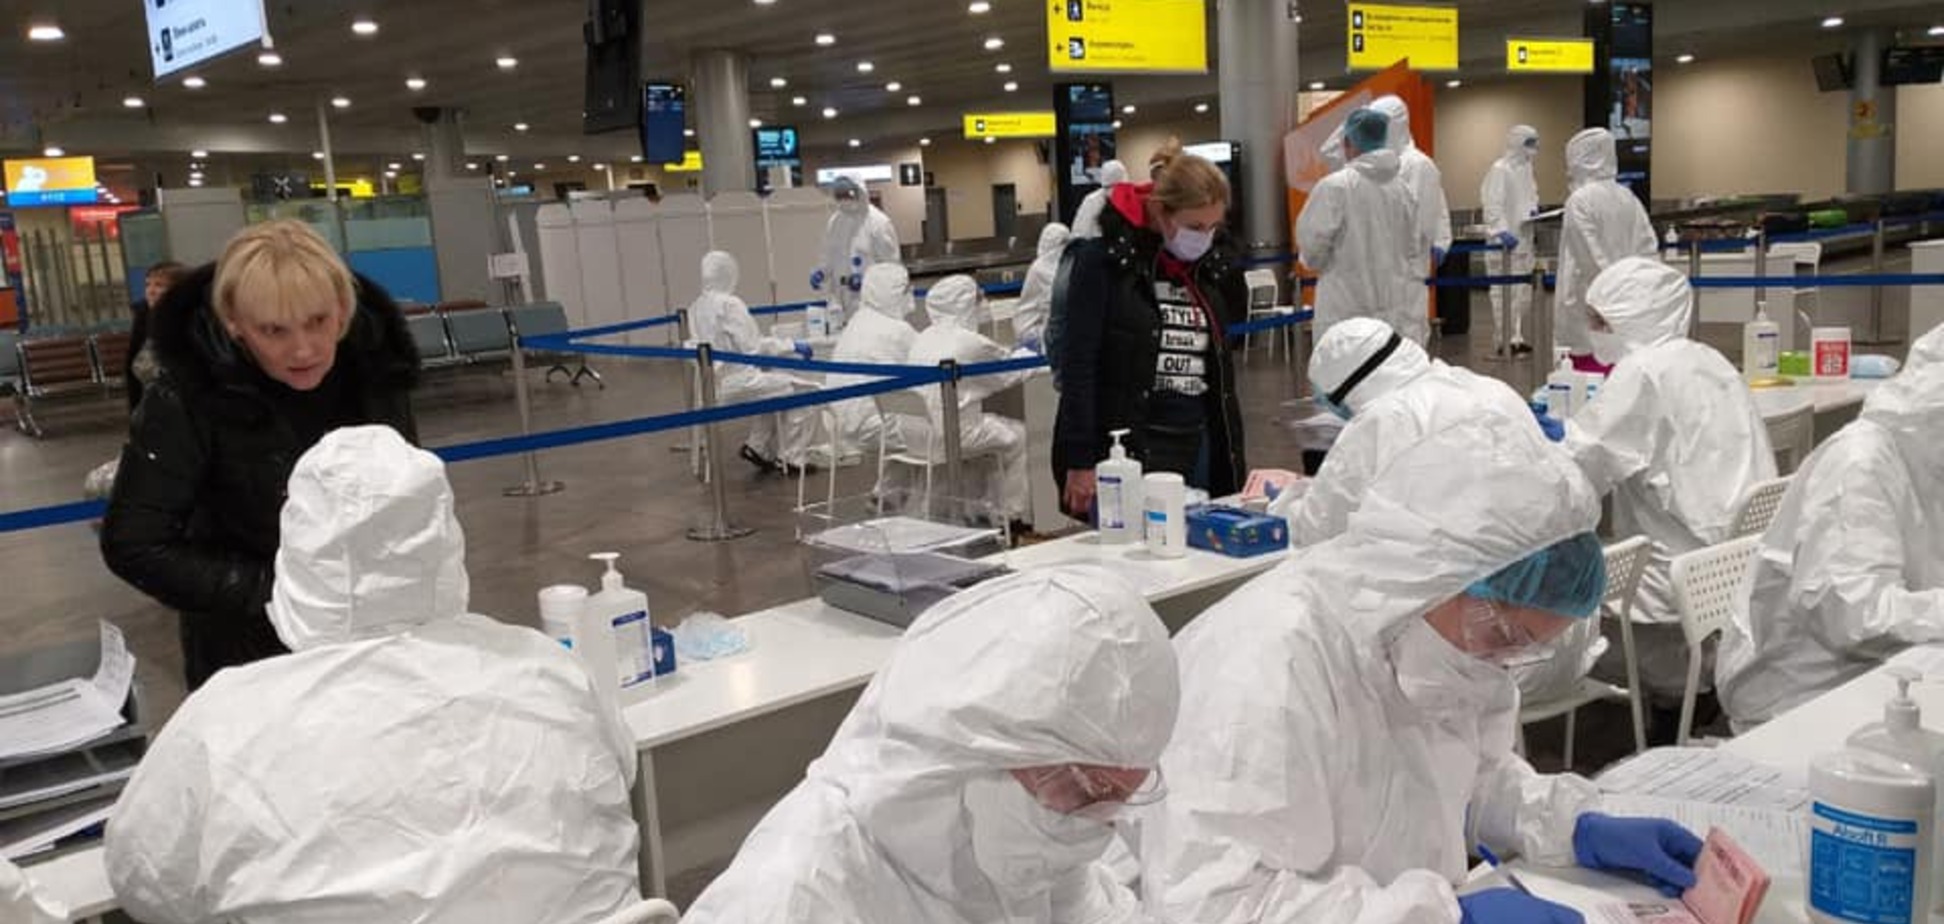 Як проходять рейси в Європі при карантині: черги тривають годинами, а duty free закритий